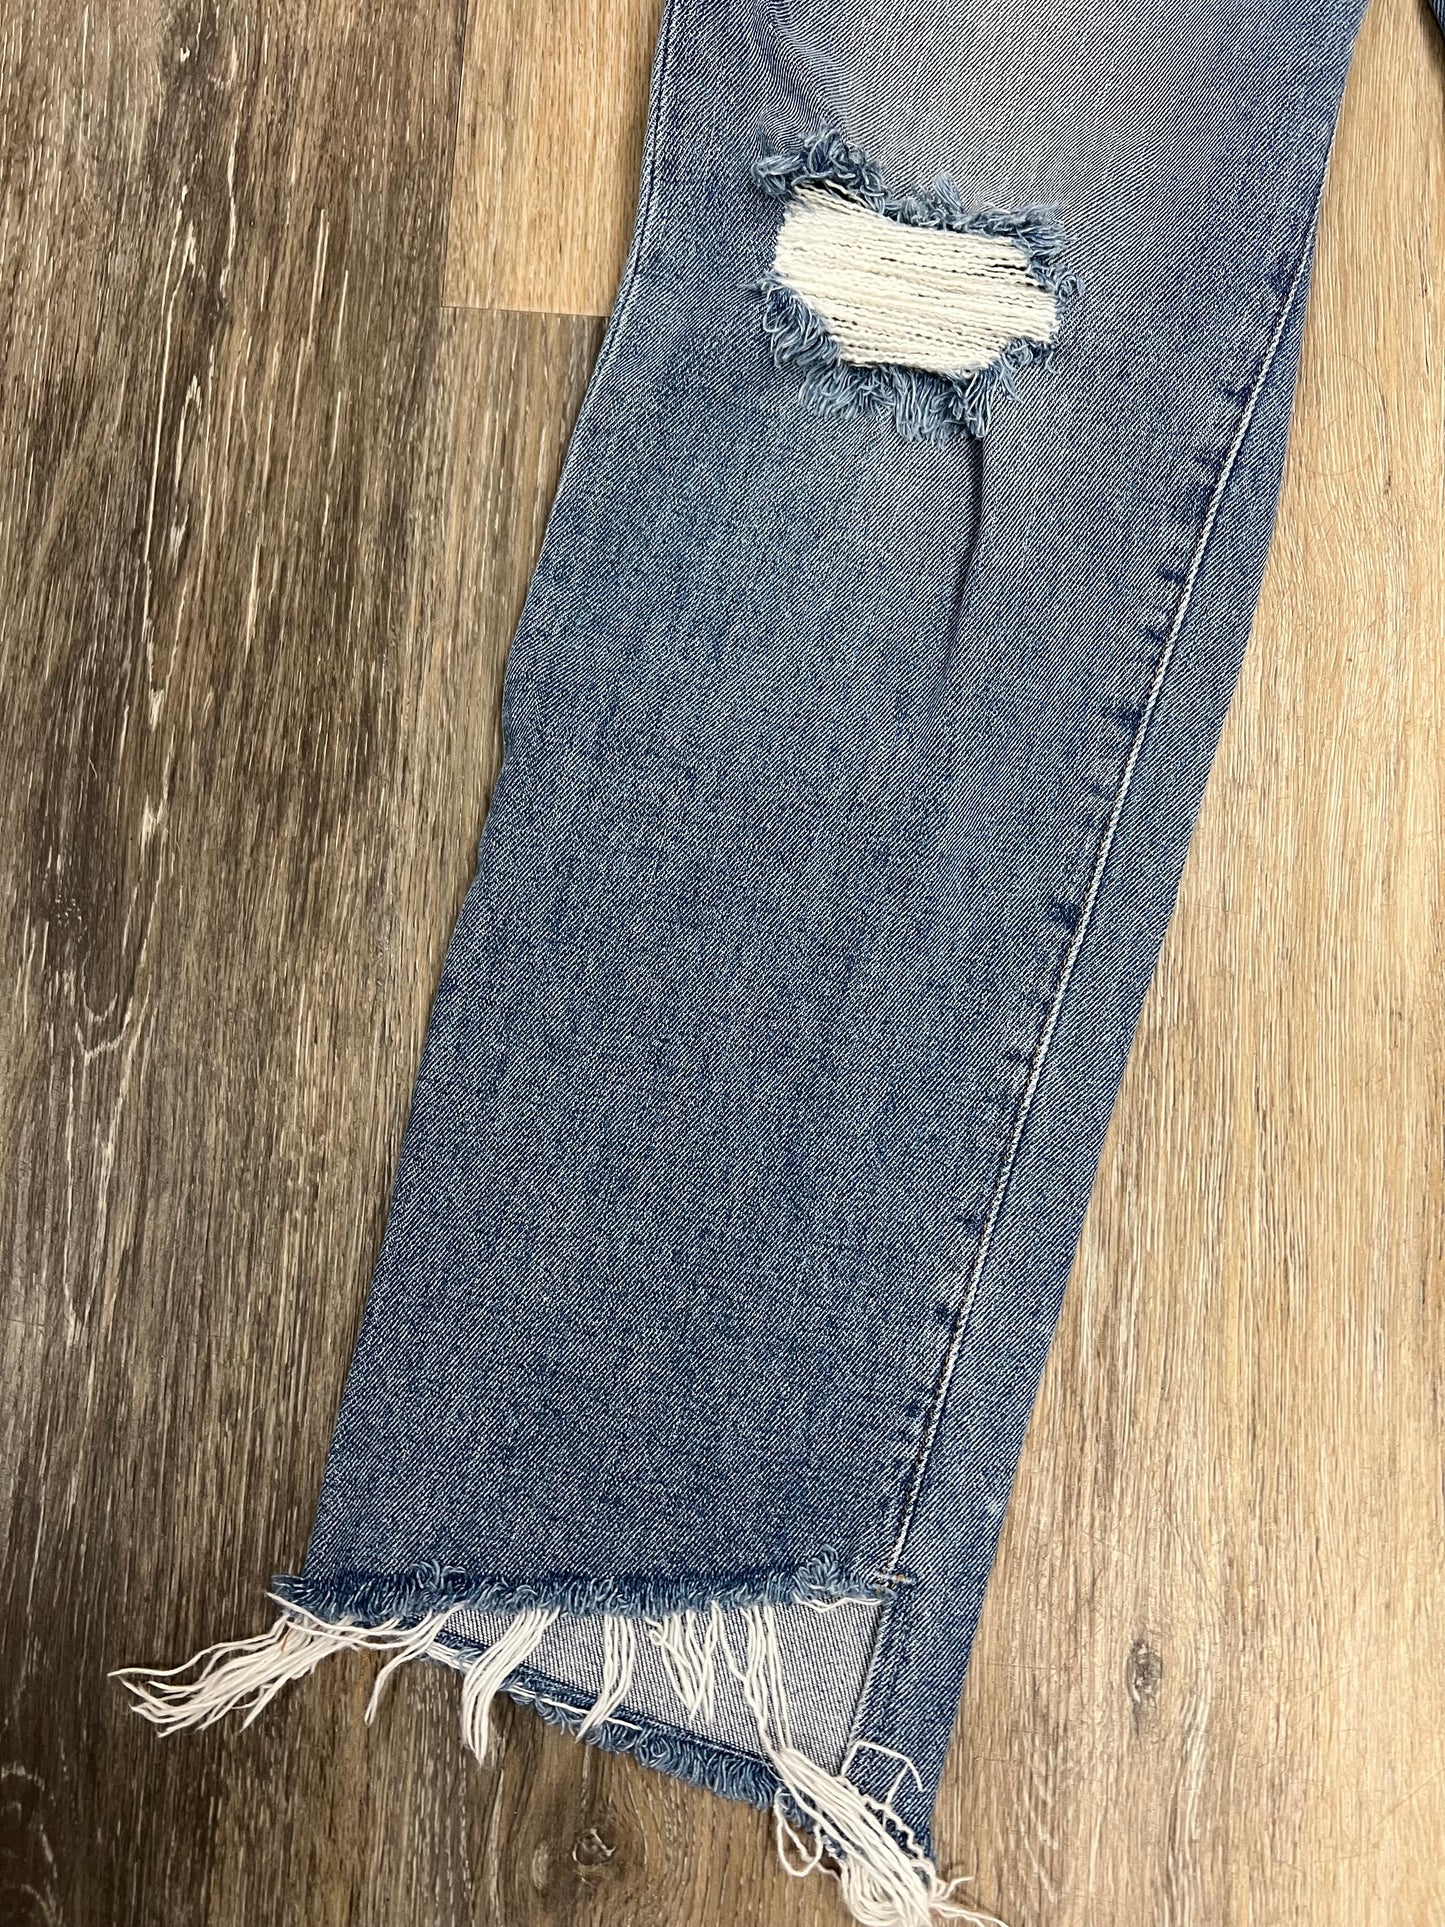 Jeans Designer By Frame  Size: 4/27